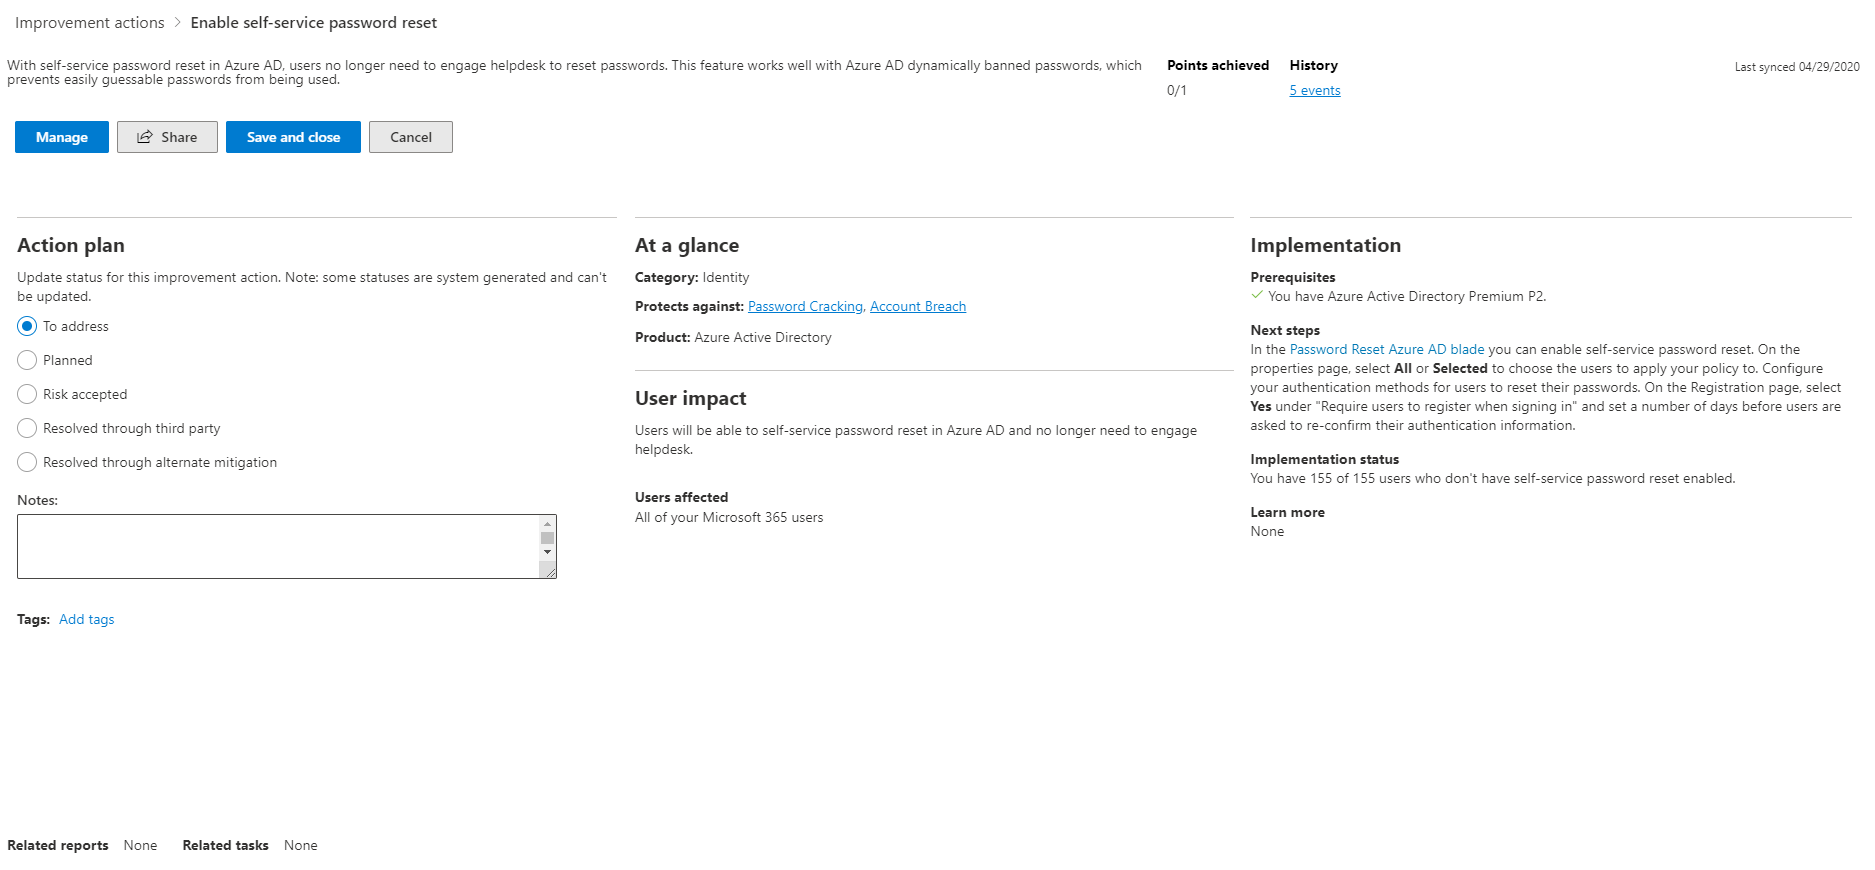 Captura de pantalla que muestra el control flotante de una acción recomendada en el portal de Microsoft 365 Defender.